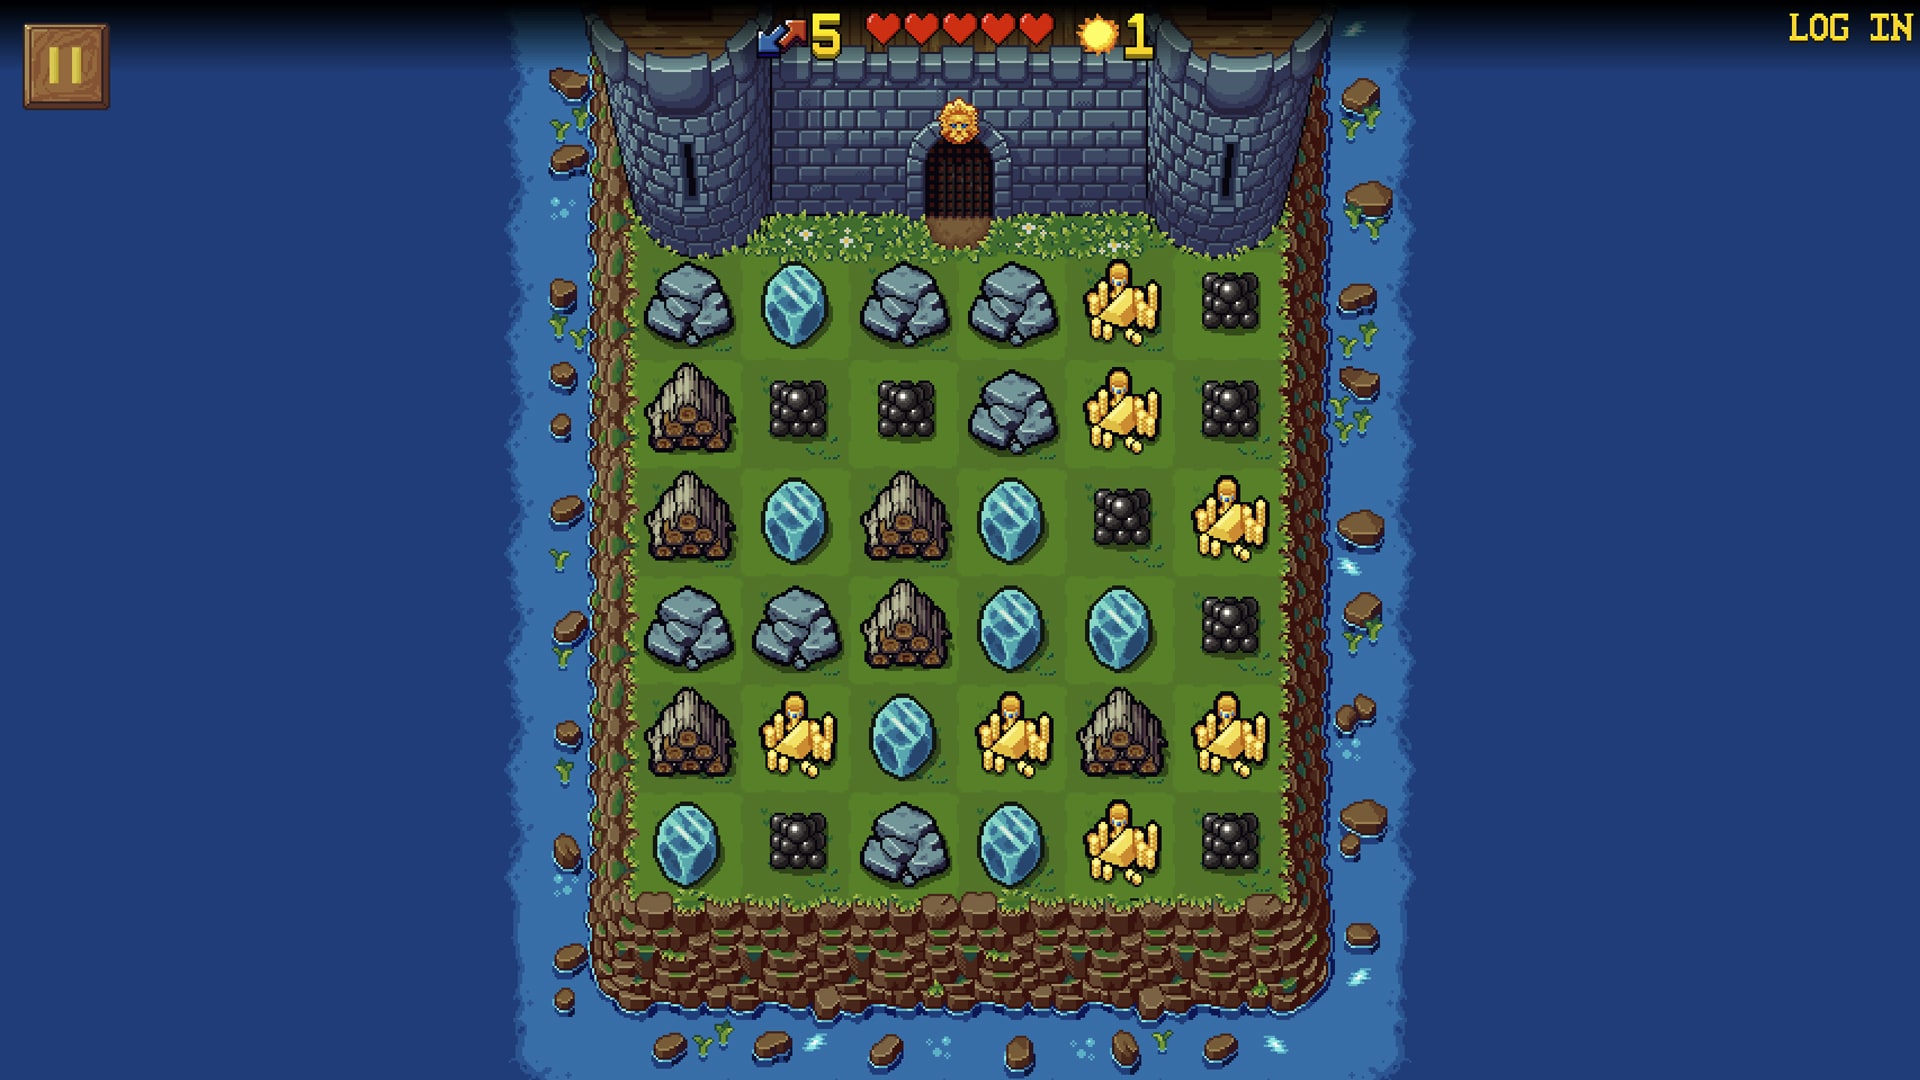 Gameplay screenshot of Tower Swap, showcasing strategic tower matching mechanics